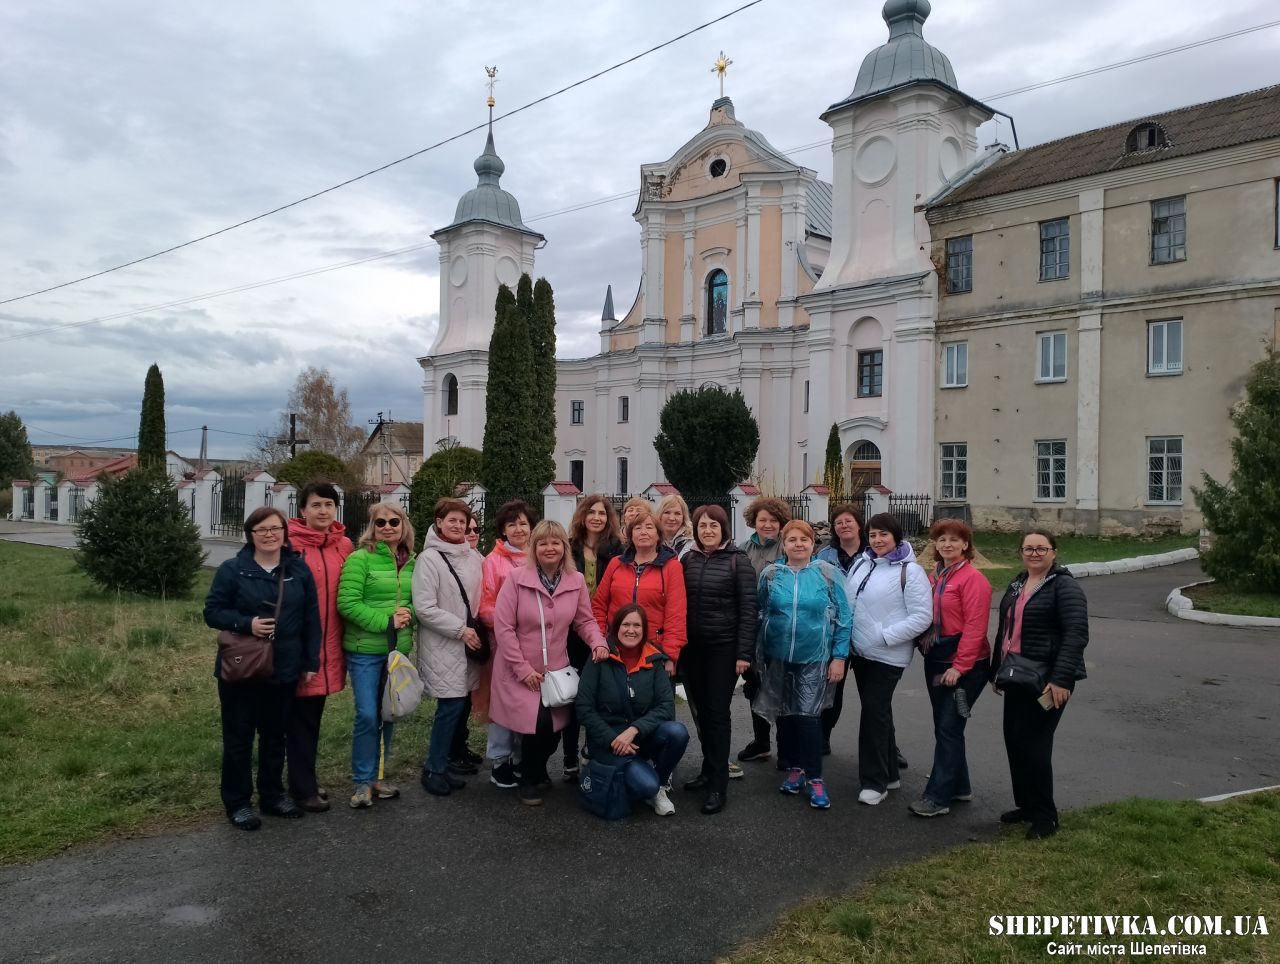 Оглянути пам'ятки Шепетівського району приїхали учасники туристичного туру із Харкова